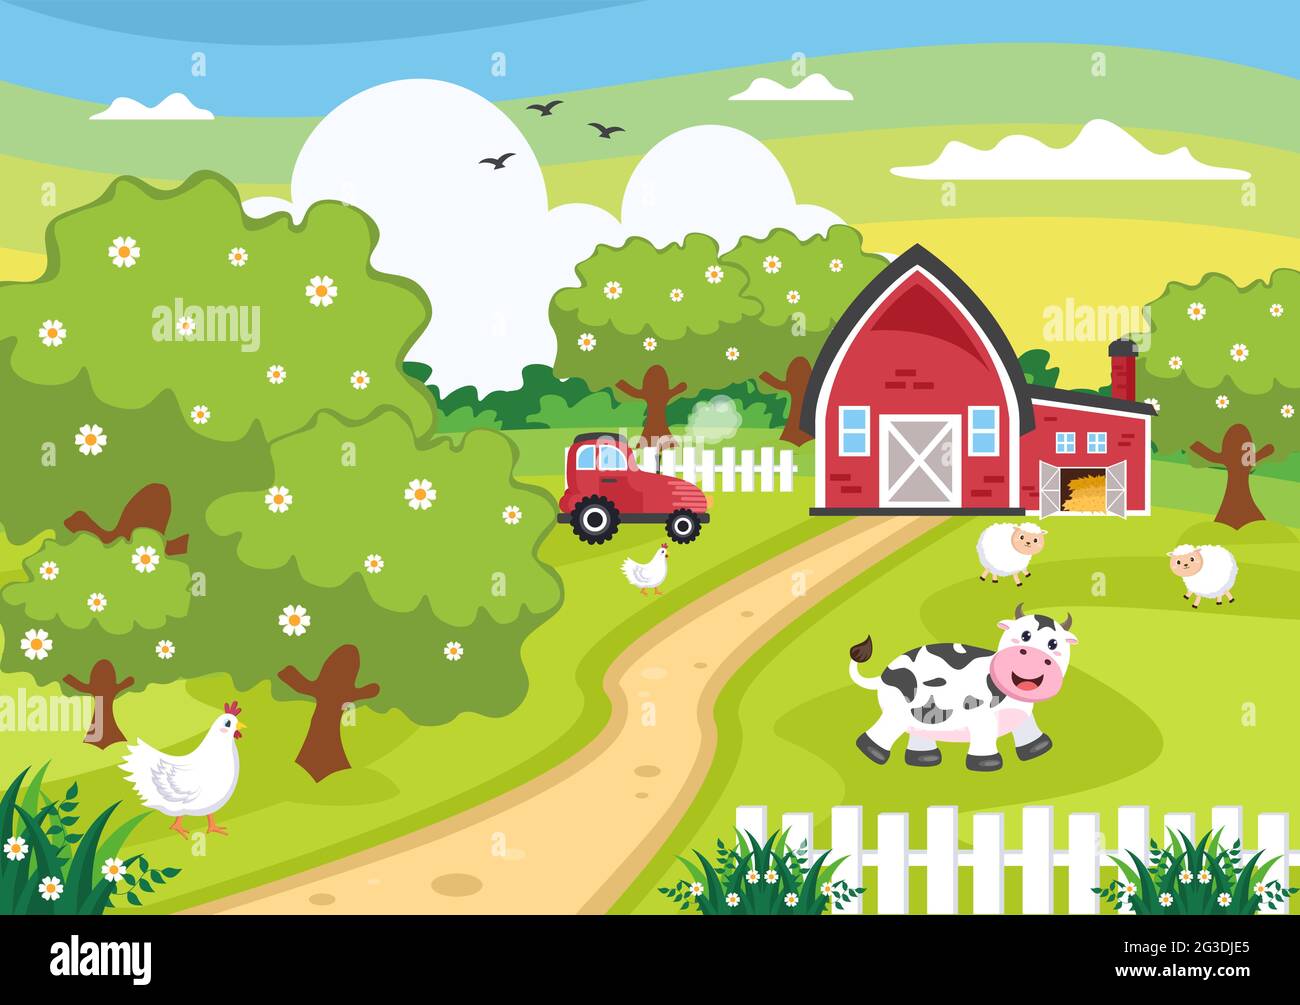 Cute Cartoon Farm Animals Vector Illustration With Cow Horse